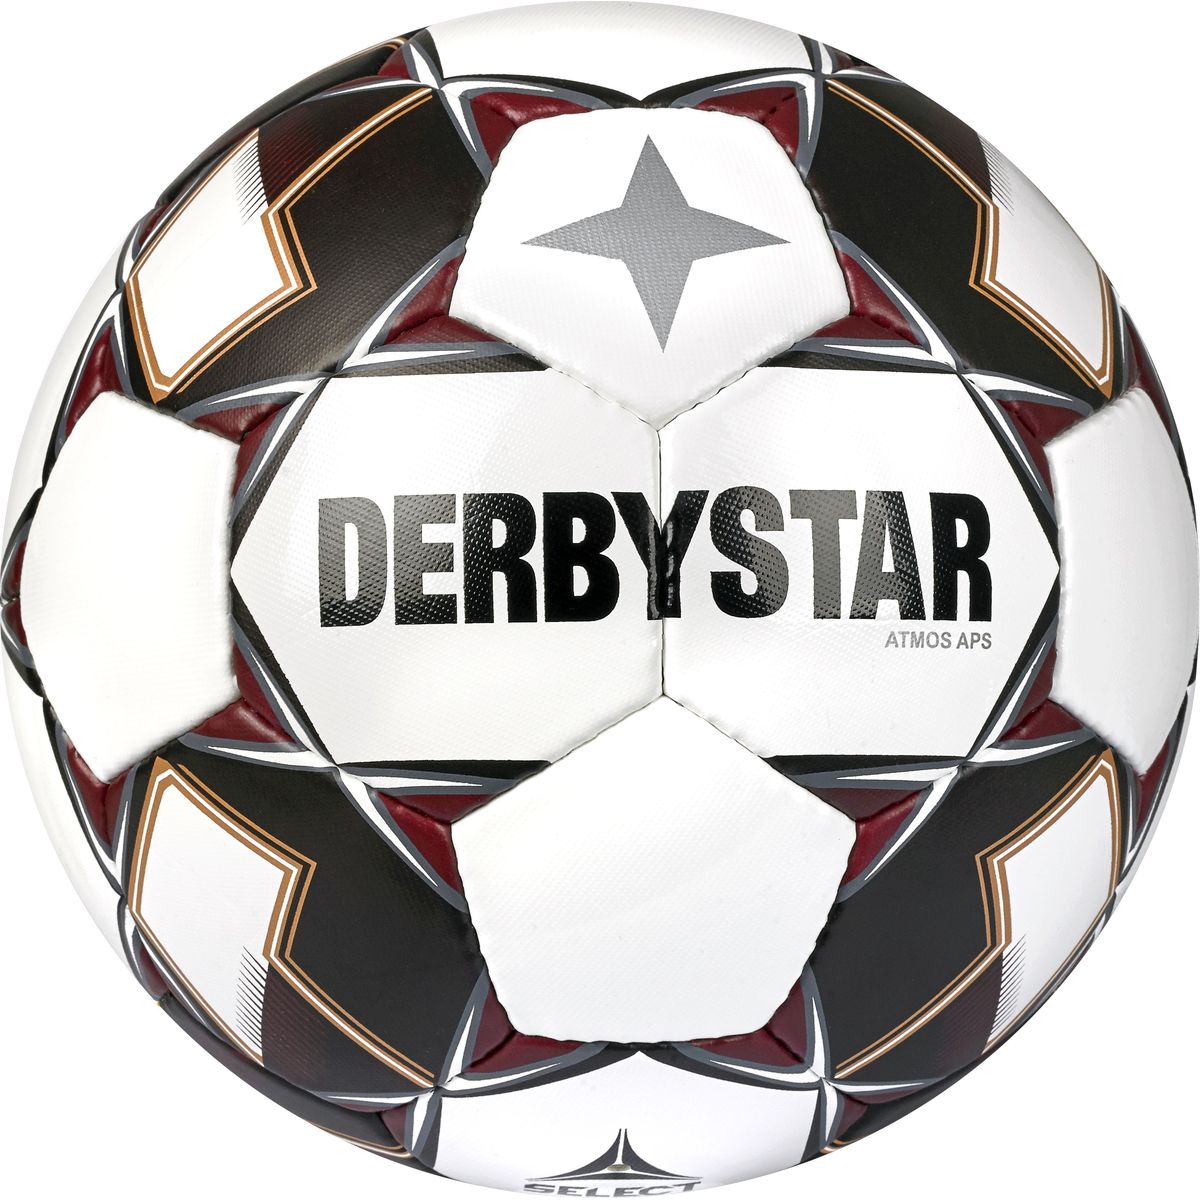 Derbystar Atmos APS v22 Outdoor-Fußball